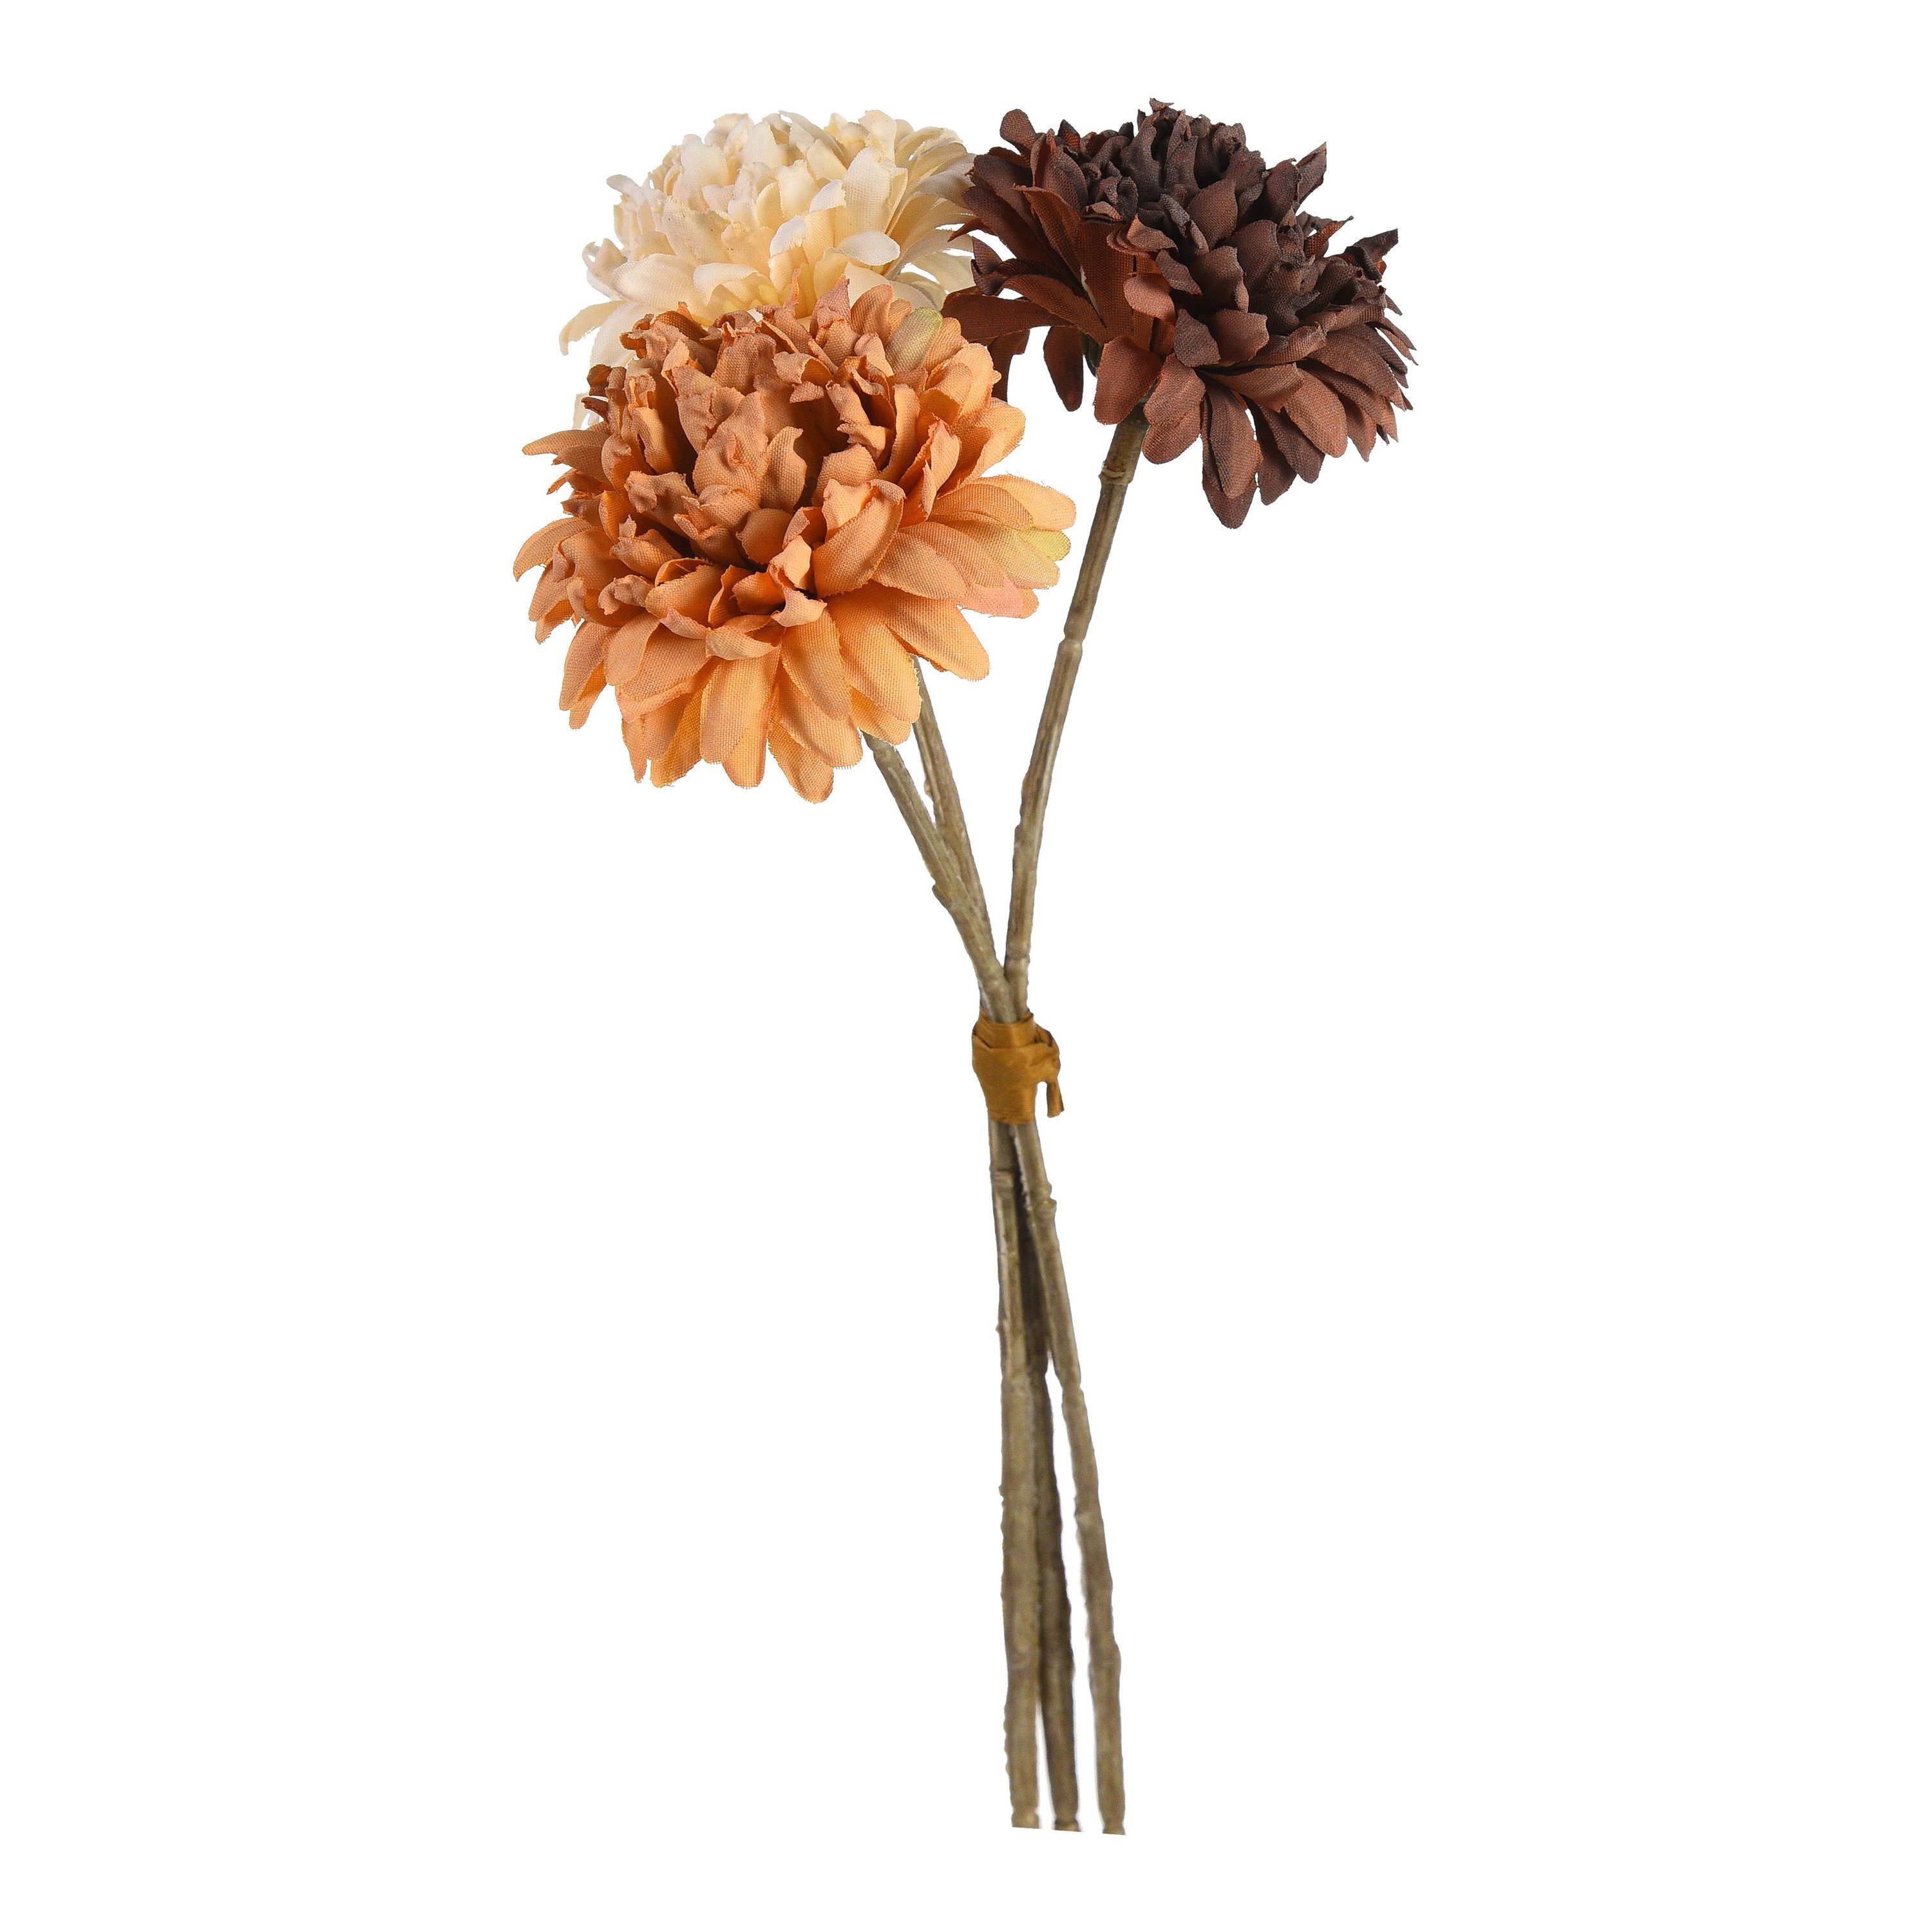 [Einfach zu verwenden] Kunstpflanze Kunst-Blumenbündel Dahlia, Zentimeter aus Draht, Depot, L 25 Polyethylen, Polyester